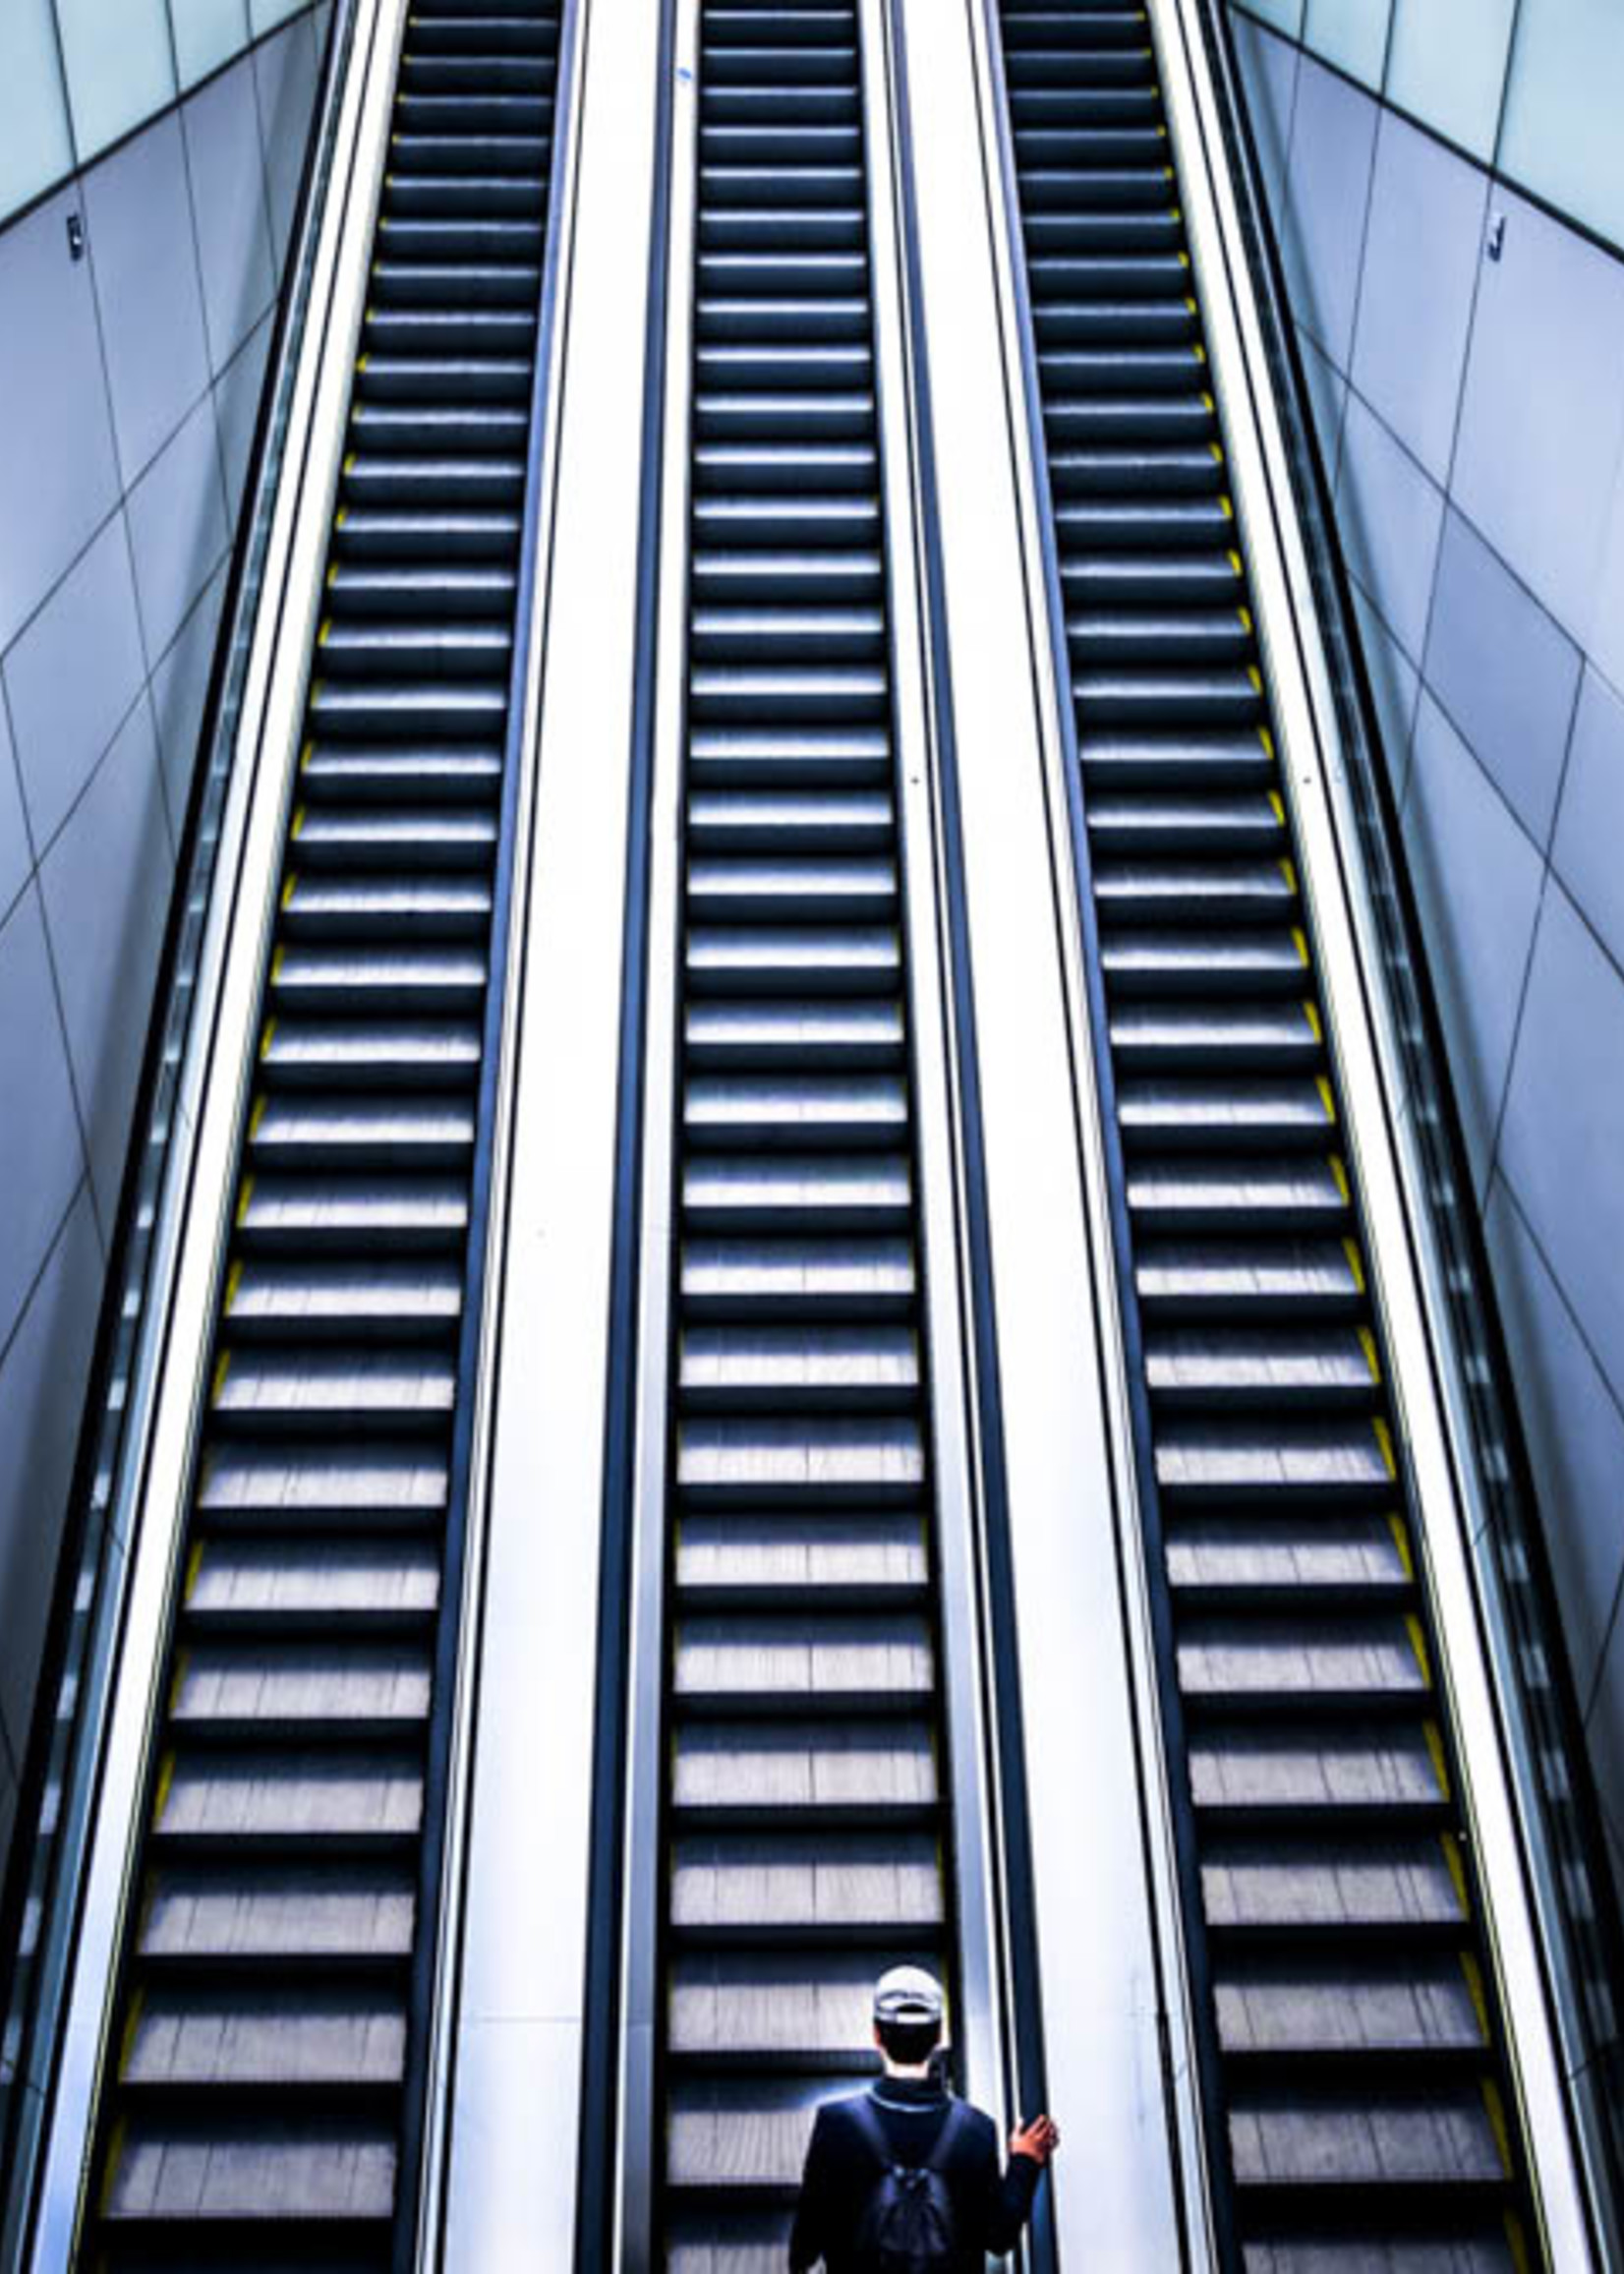 Frans van Steijn Wall photo "Stairway To Heaven" Aluminum on Dibond 120 cm